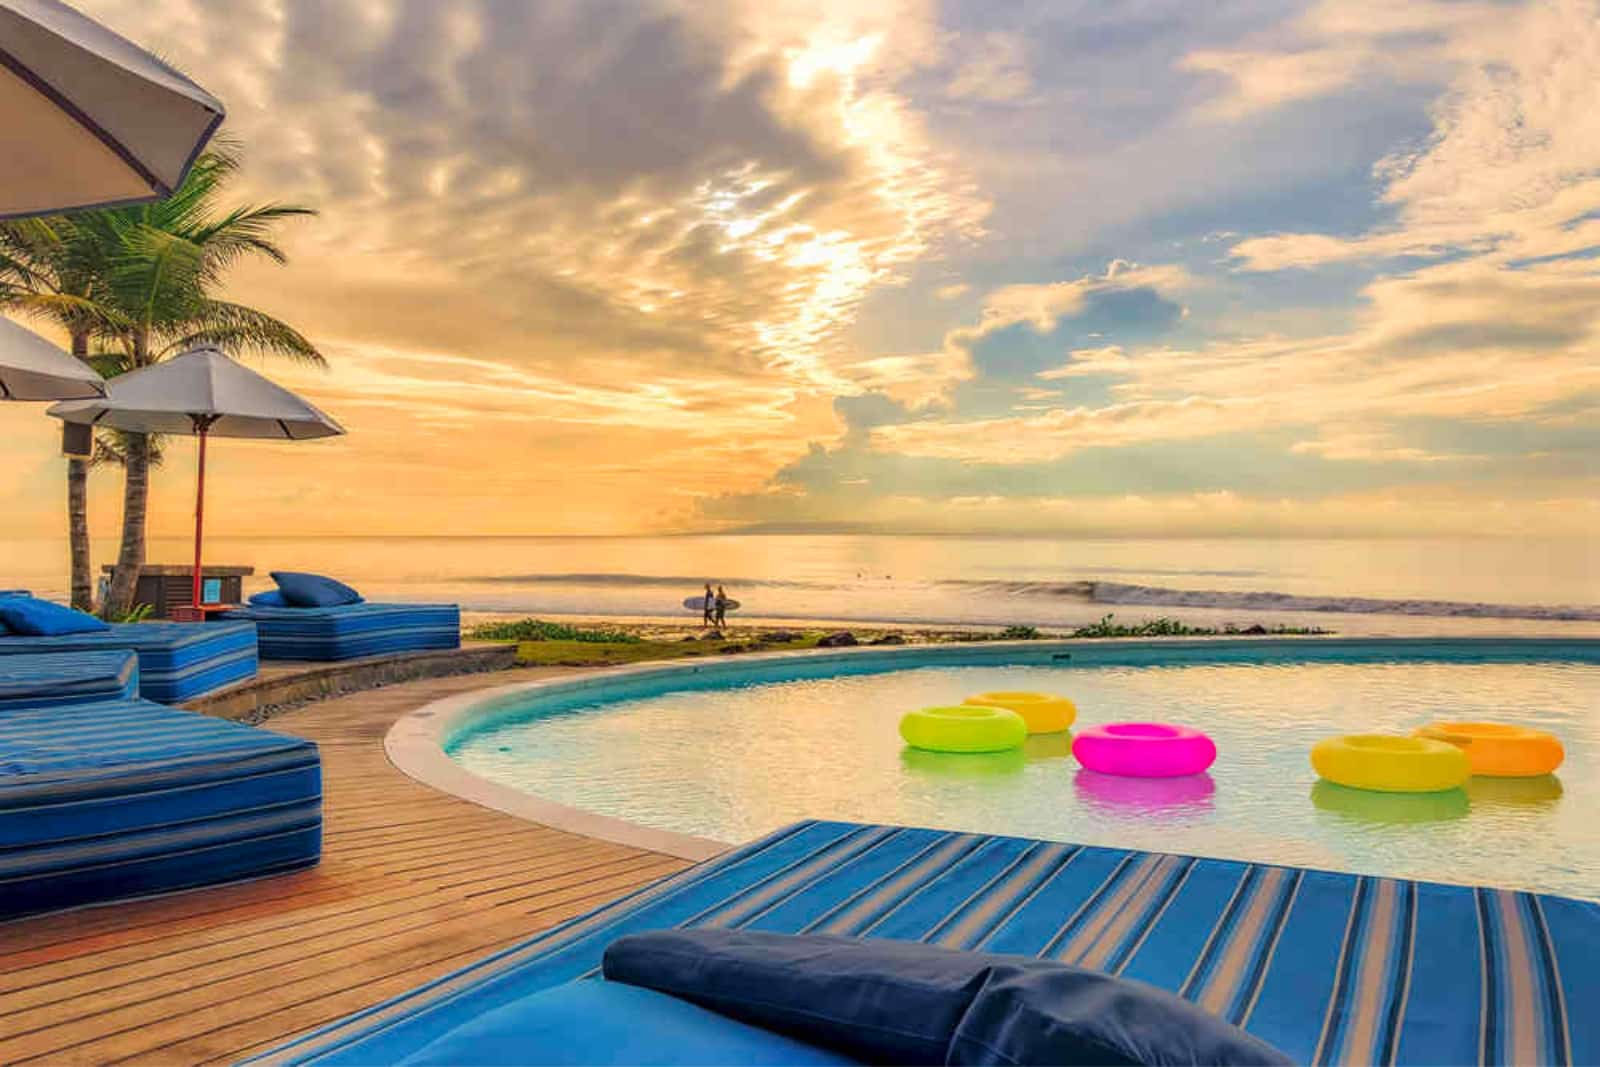 Pool side beach view of Bali resort